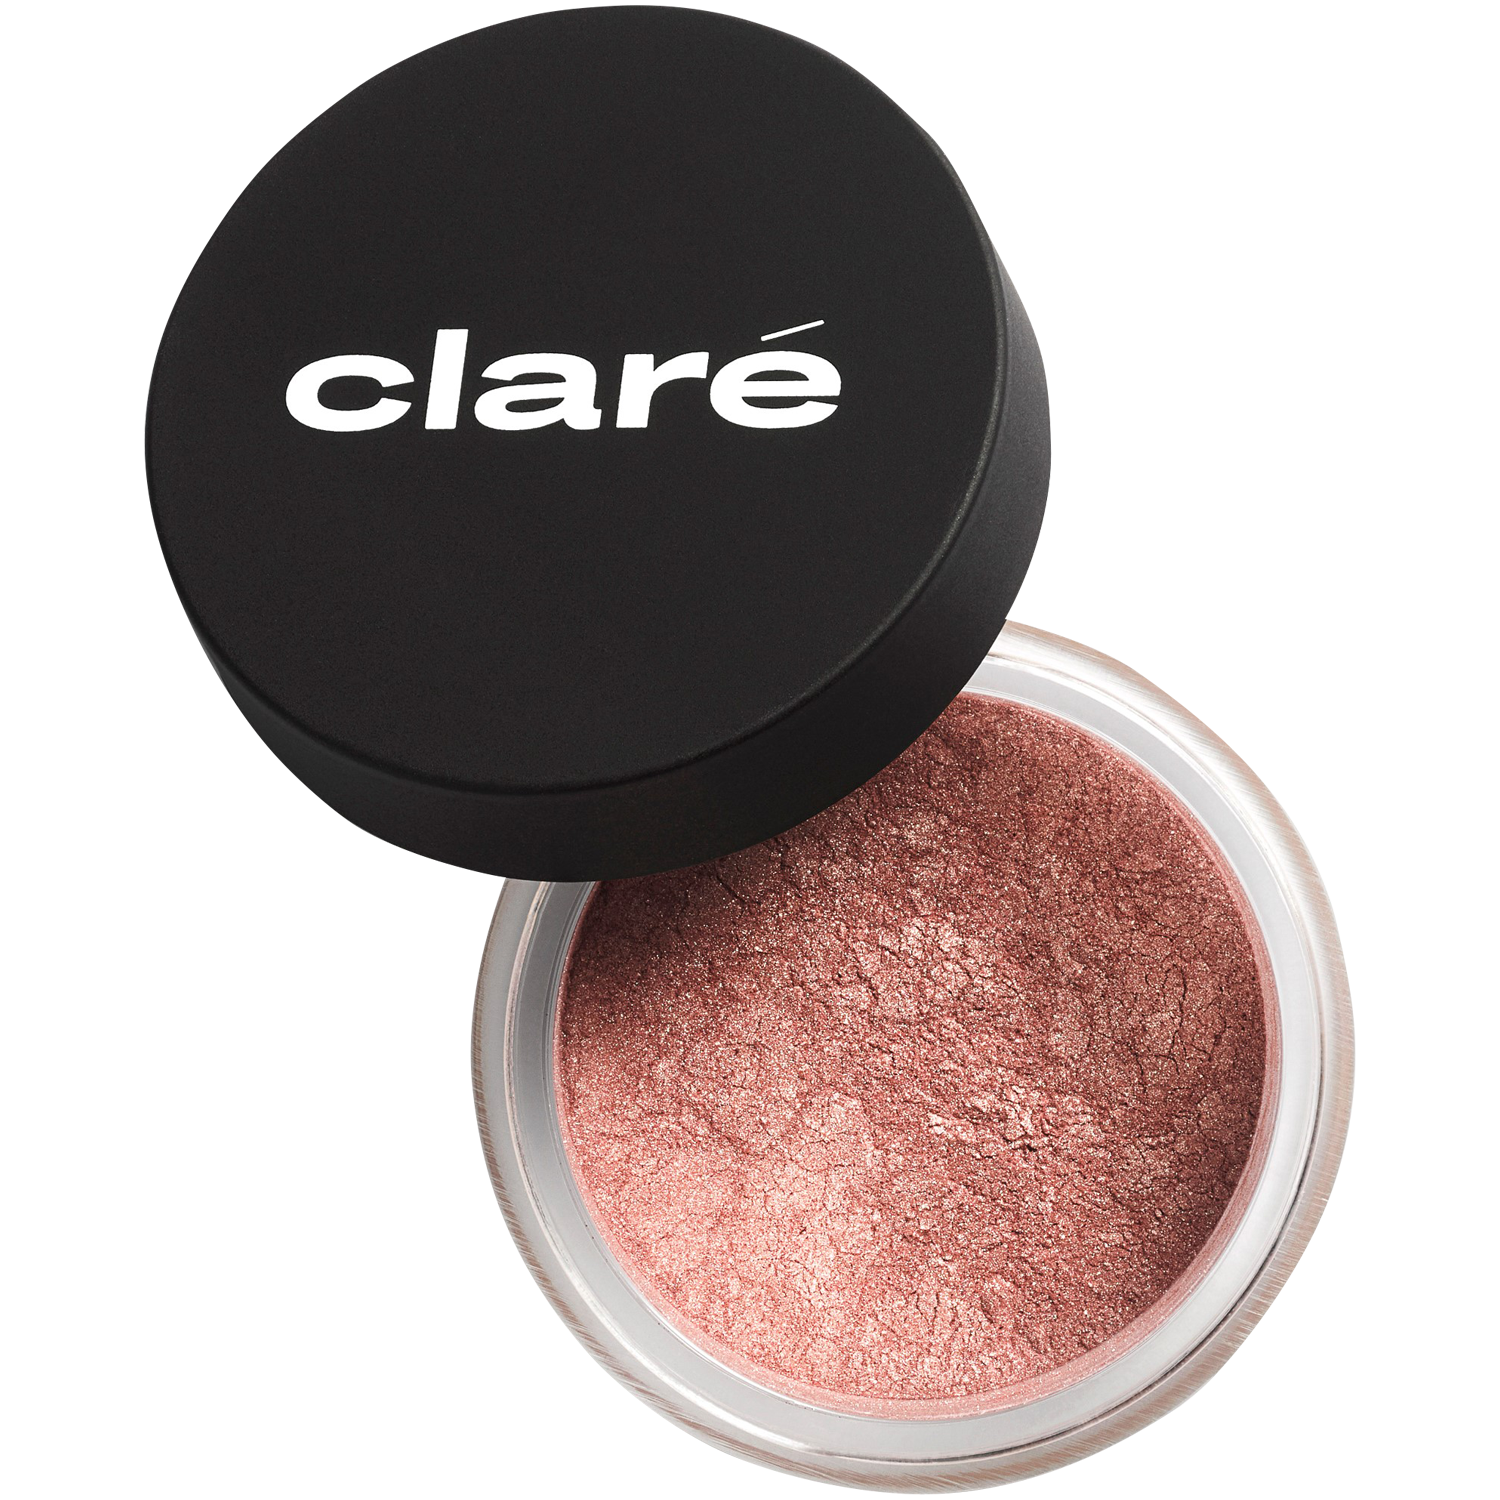 Атласные тени для век холодного телесного цвета 900 Claré Clare Makeup, 1 гр атласные тени для век холодного телесного цвета 900 claré clare makeup 1 гр